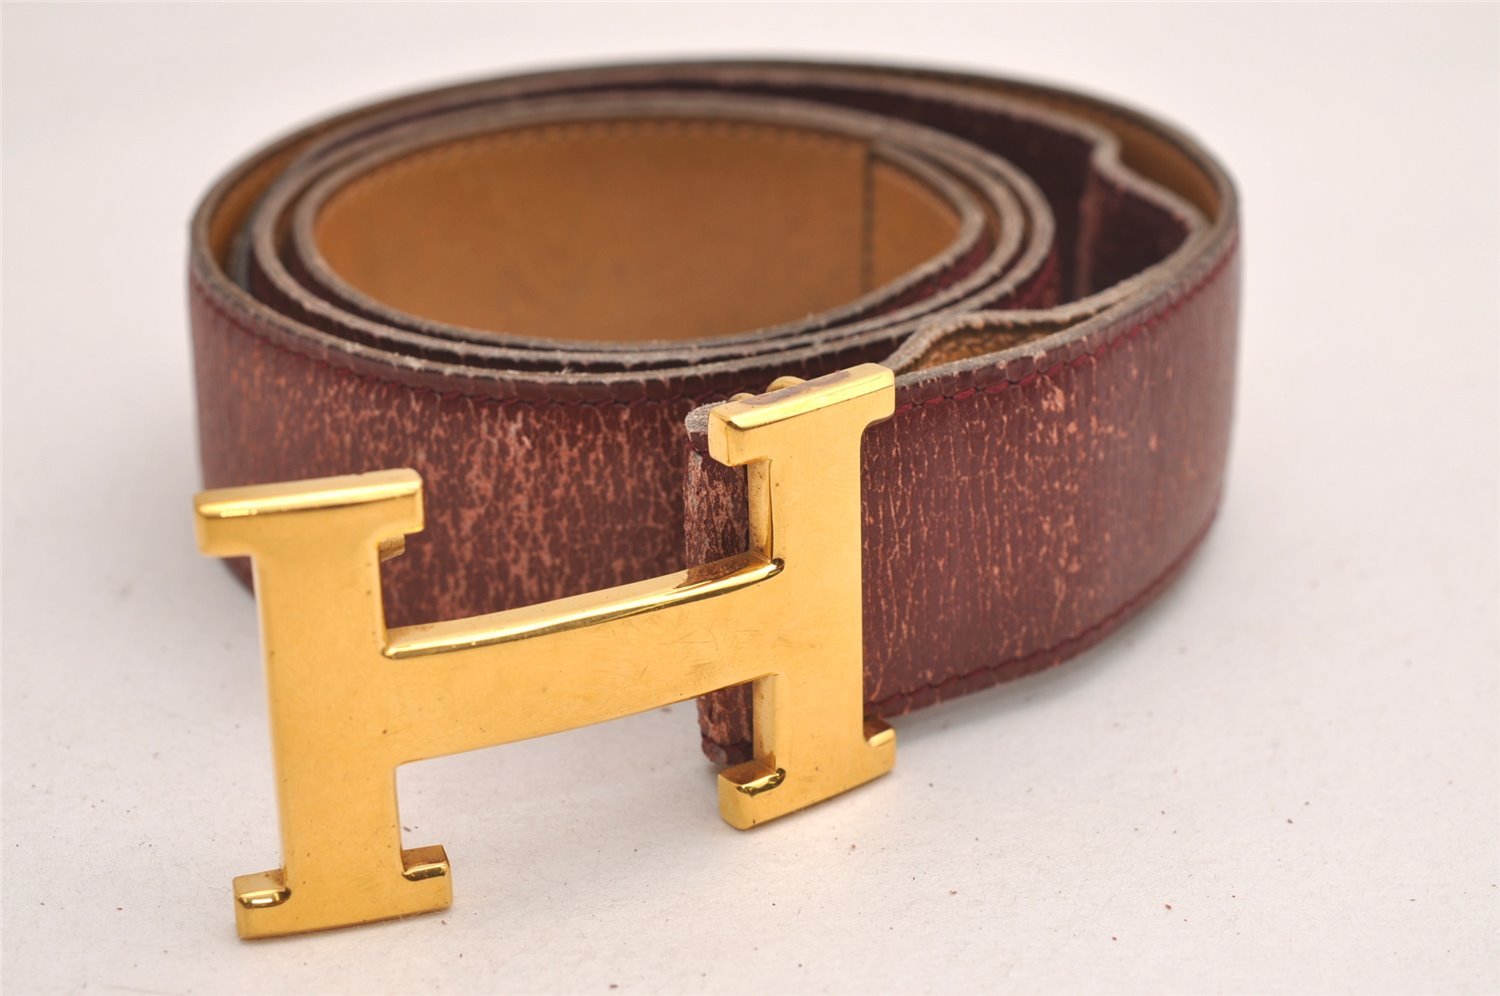 Authentic HERMES Constance Leather Belt Size 100cm 39.4